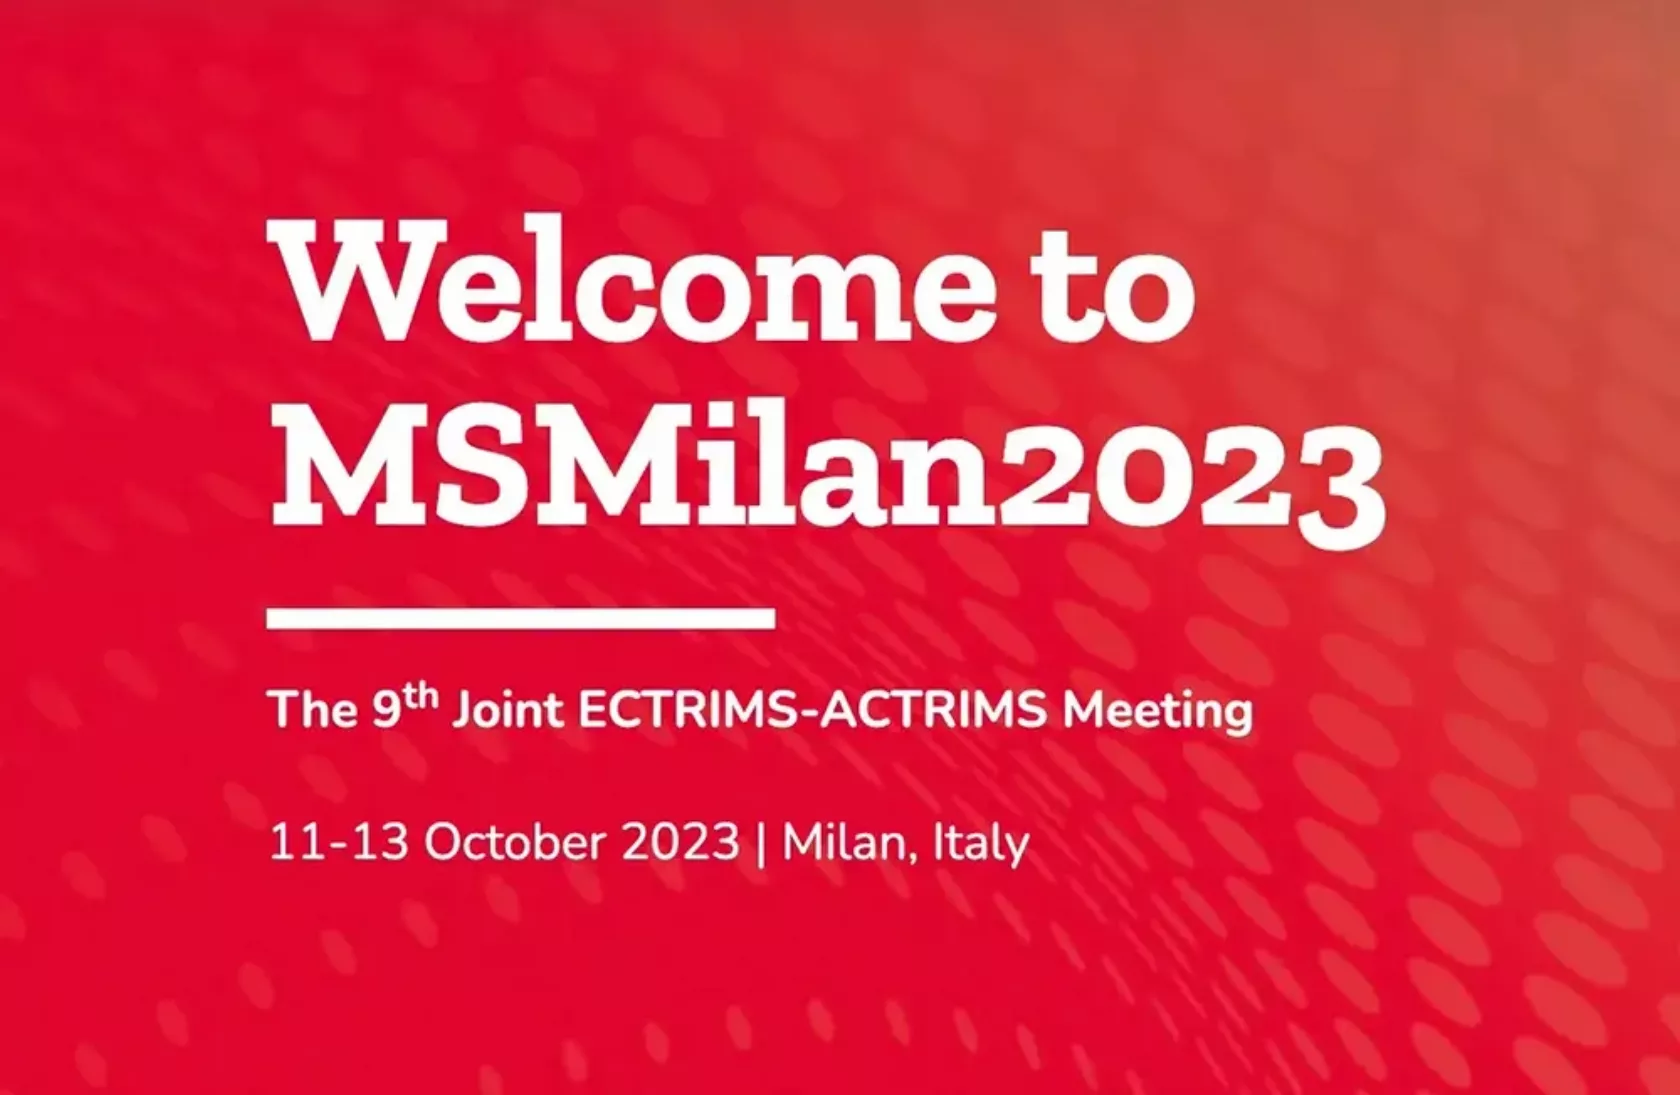 Kongress-Logo des Actrims-Ectrims-Meetings 2023 in Mailand